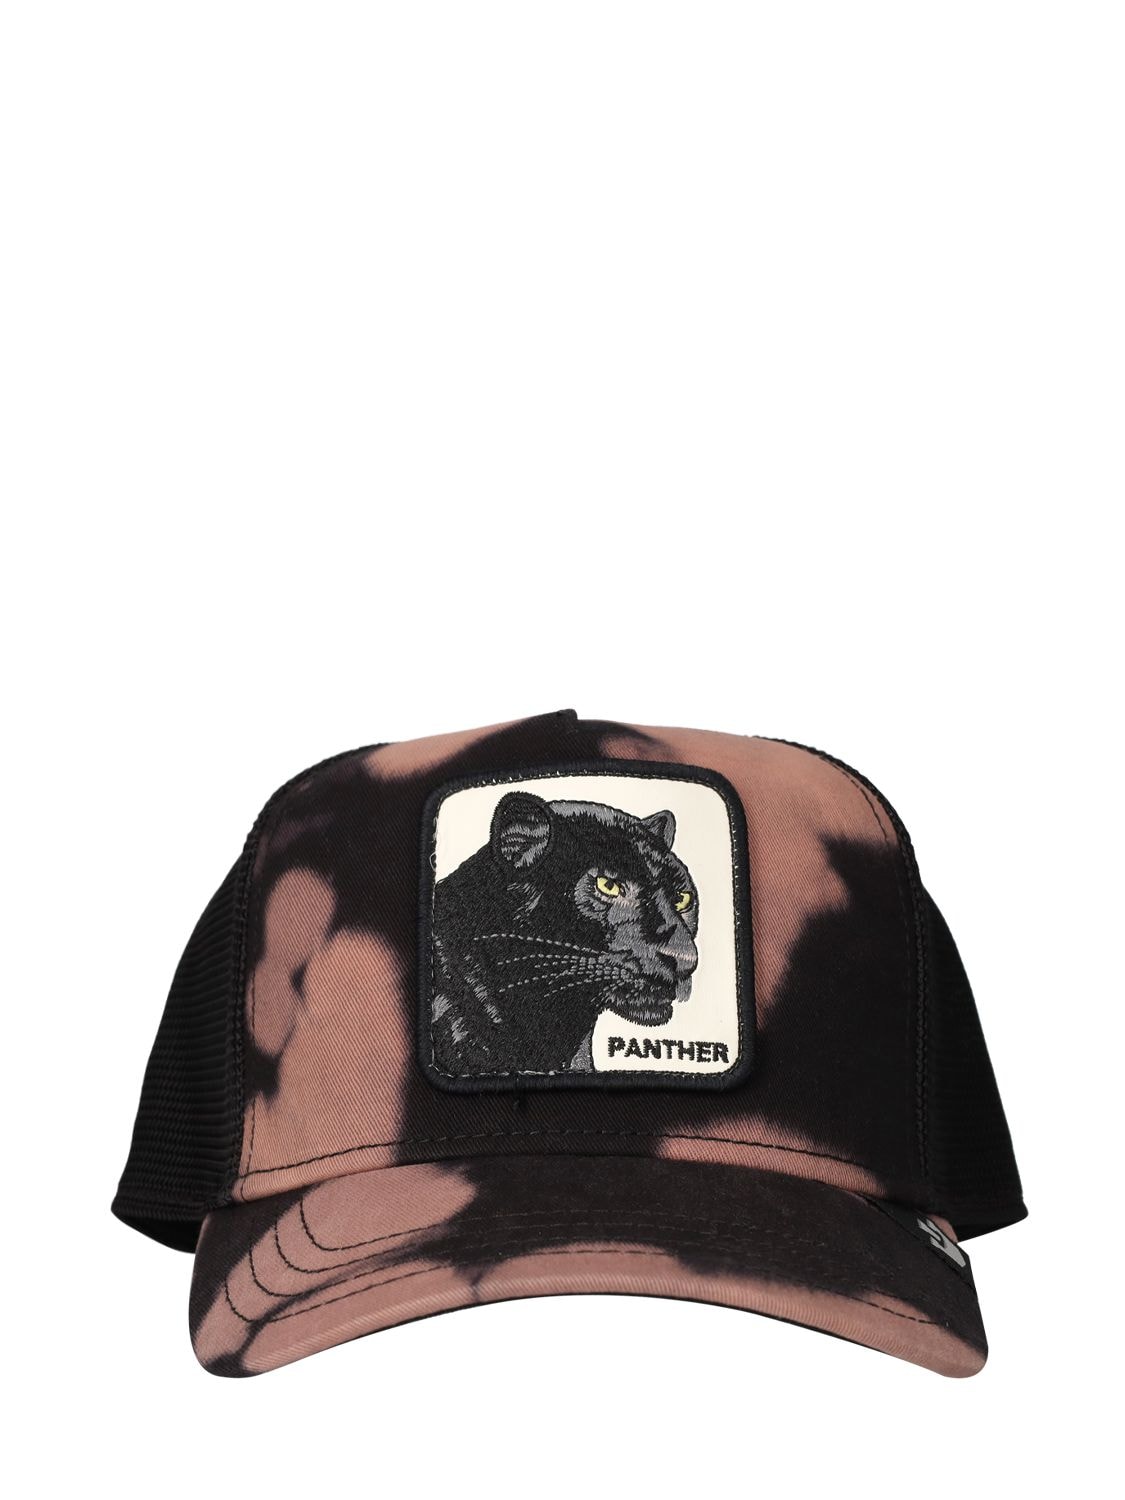 Goorin Bros Acid Panther Trucker Hat W/ Patch In Black